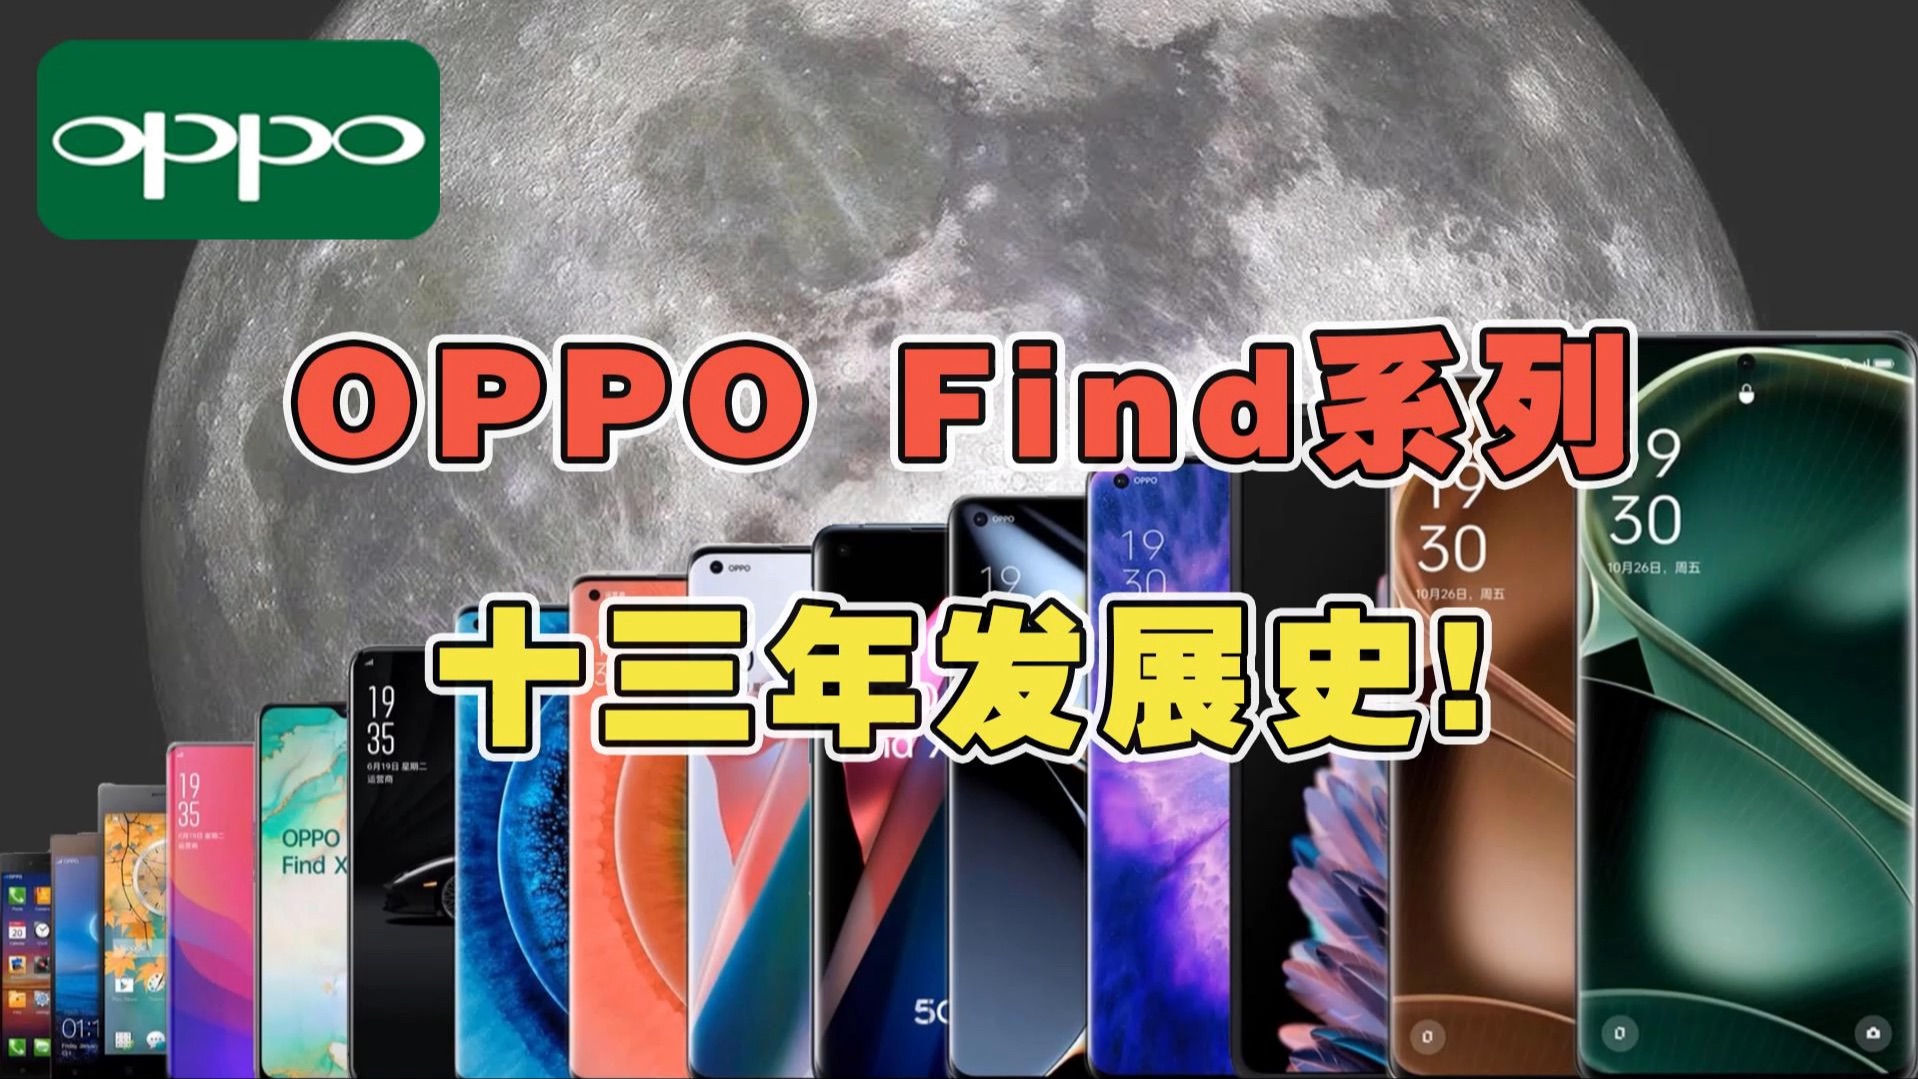 OPPO Find系列十三年发展史！你觉得最经典的Find系列手机是哪款？ #OPPO #学生党 #数码科技